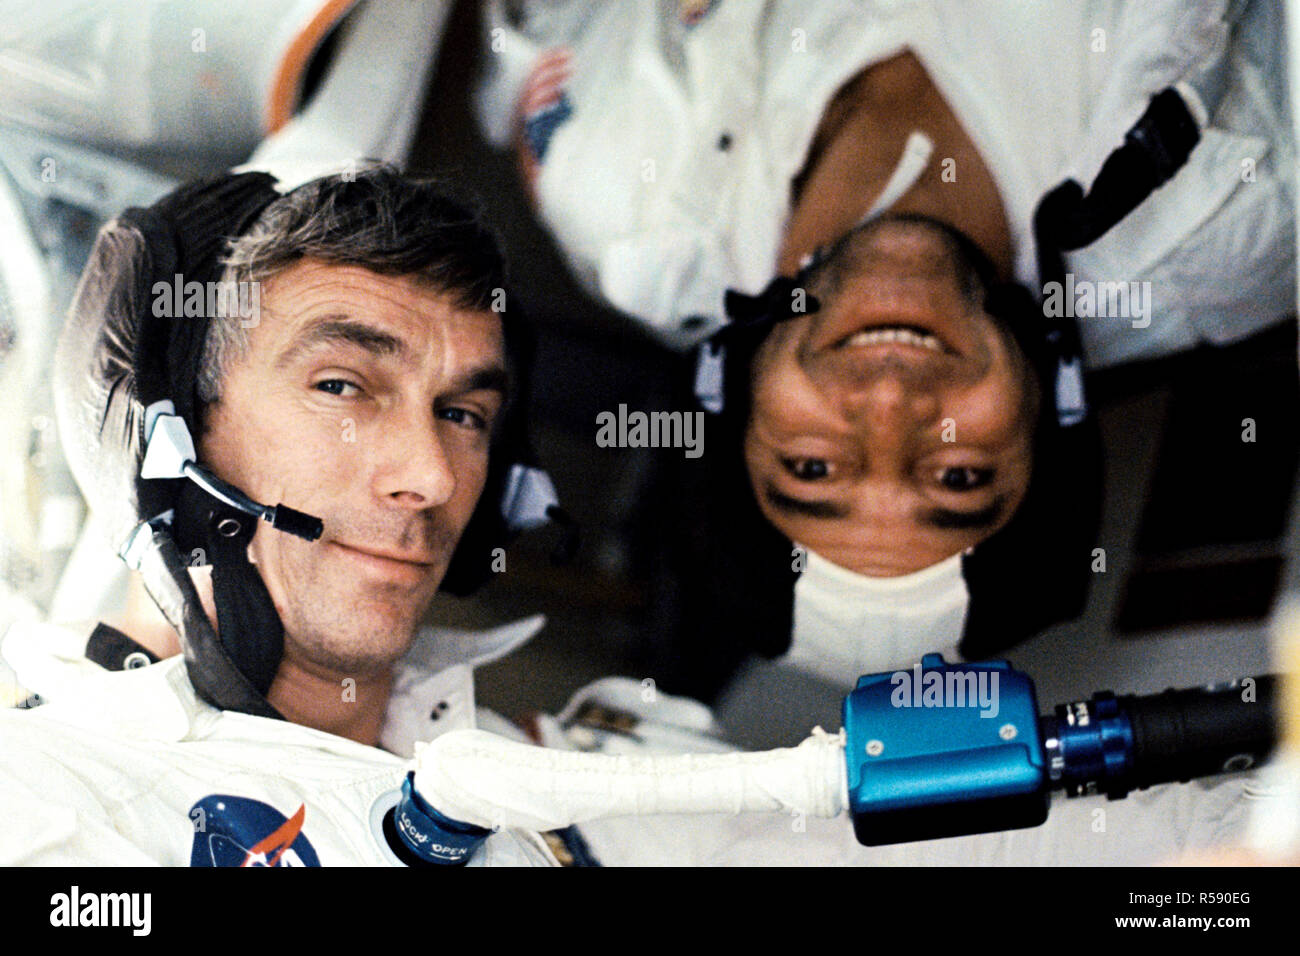 (7-19 Dez. 1972)------- Wissenschaftler - Astronaut Harrison H. 'Jack' Schmitt, Lunar Module Pilot, nahm dieses Foto von seinen beiden Kollegen crew Männer unter Bedingungen der Schwerelosigkeit an Bord der Apollo 17 Satelliten während der letzten Mondlandung Mission der NASA Apollo Programm. Stockfoto